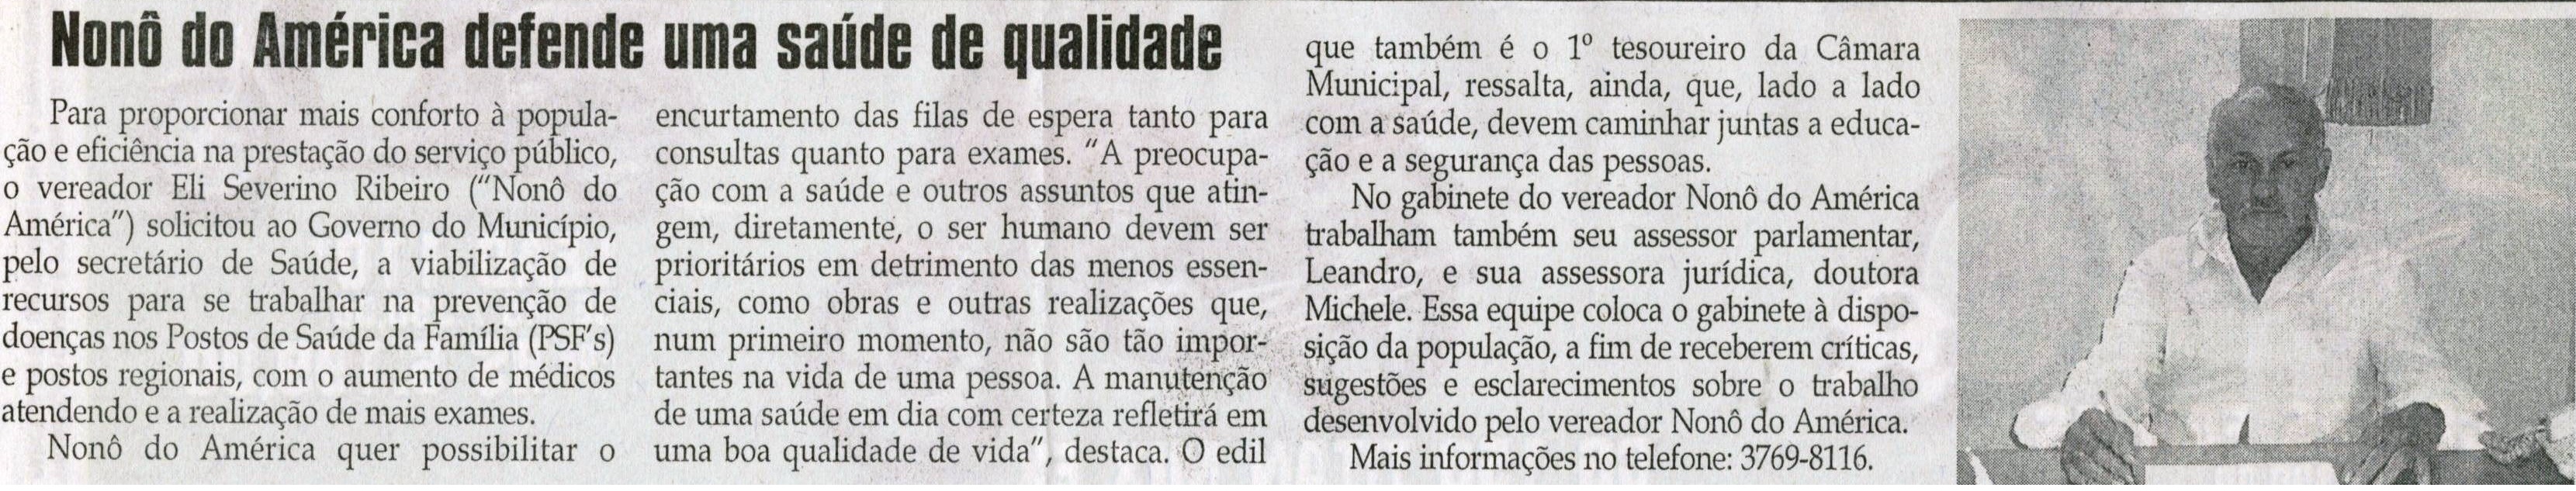 Nonô do América defende uma saúde de qualidade. Jornal Correio da Cidade, Cons Lafaiete, 19 jun. 2010 p. 04  